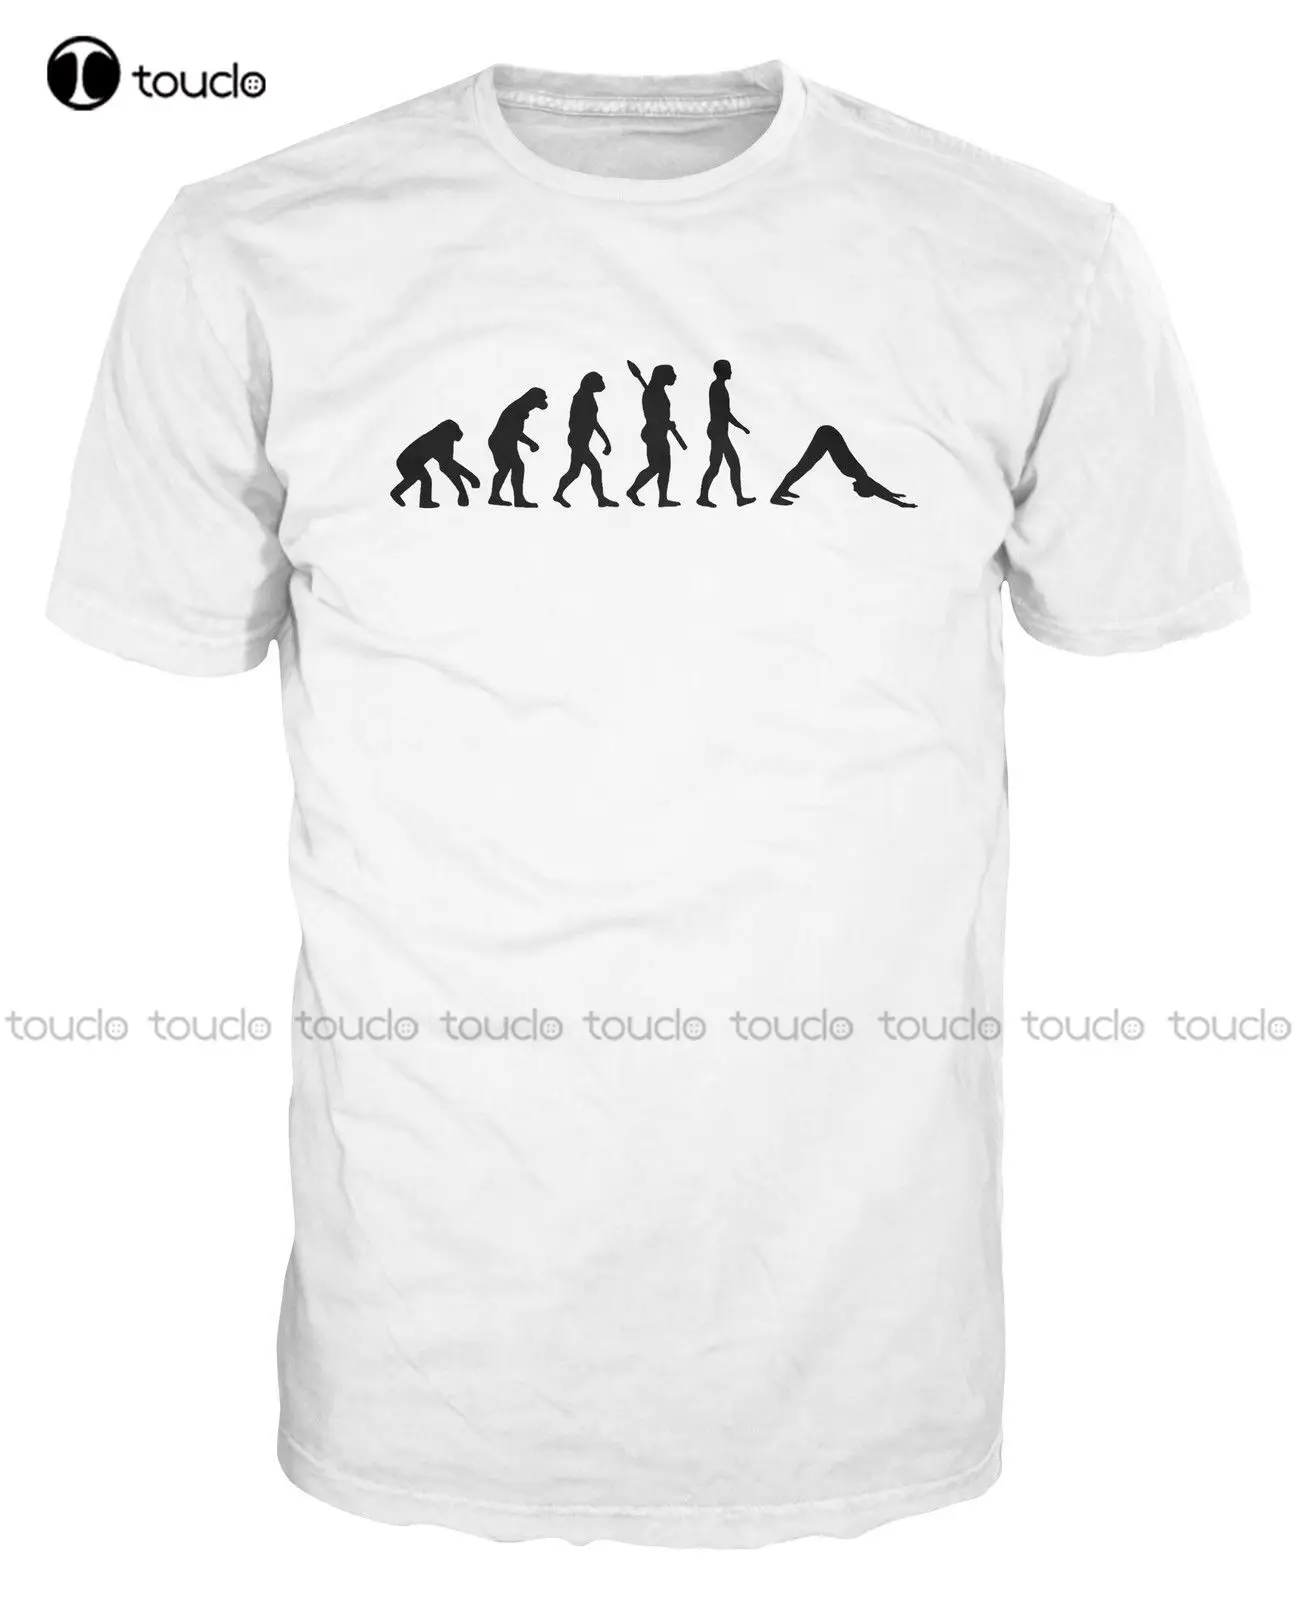 

Designs Mens Tshirt Tops Summer Cool Funny T-Shirt Yogar Evolution Funny Meditation Mantra Om Zen Ringer T Shirt